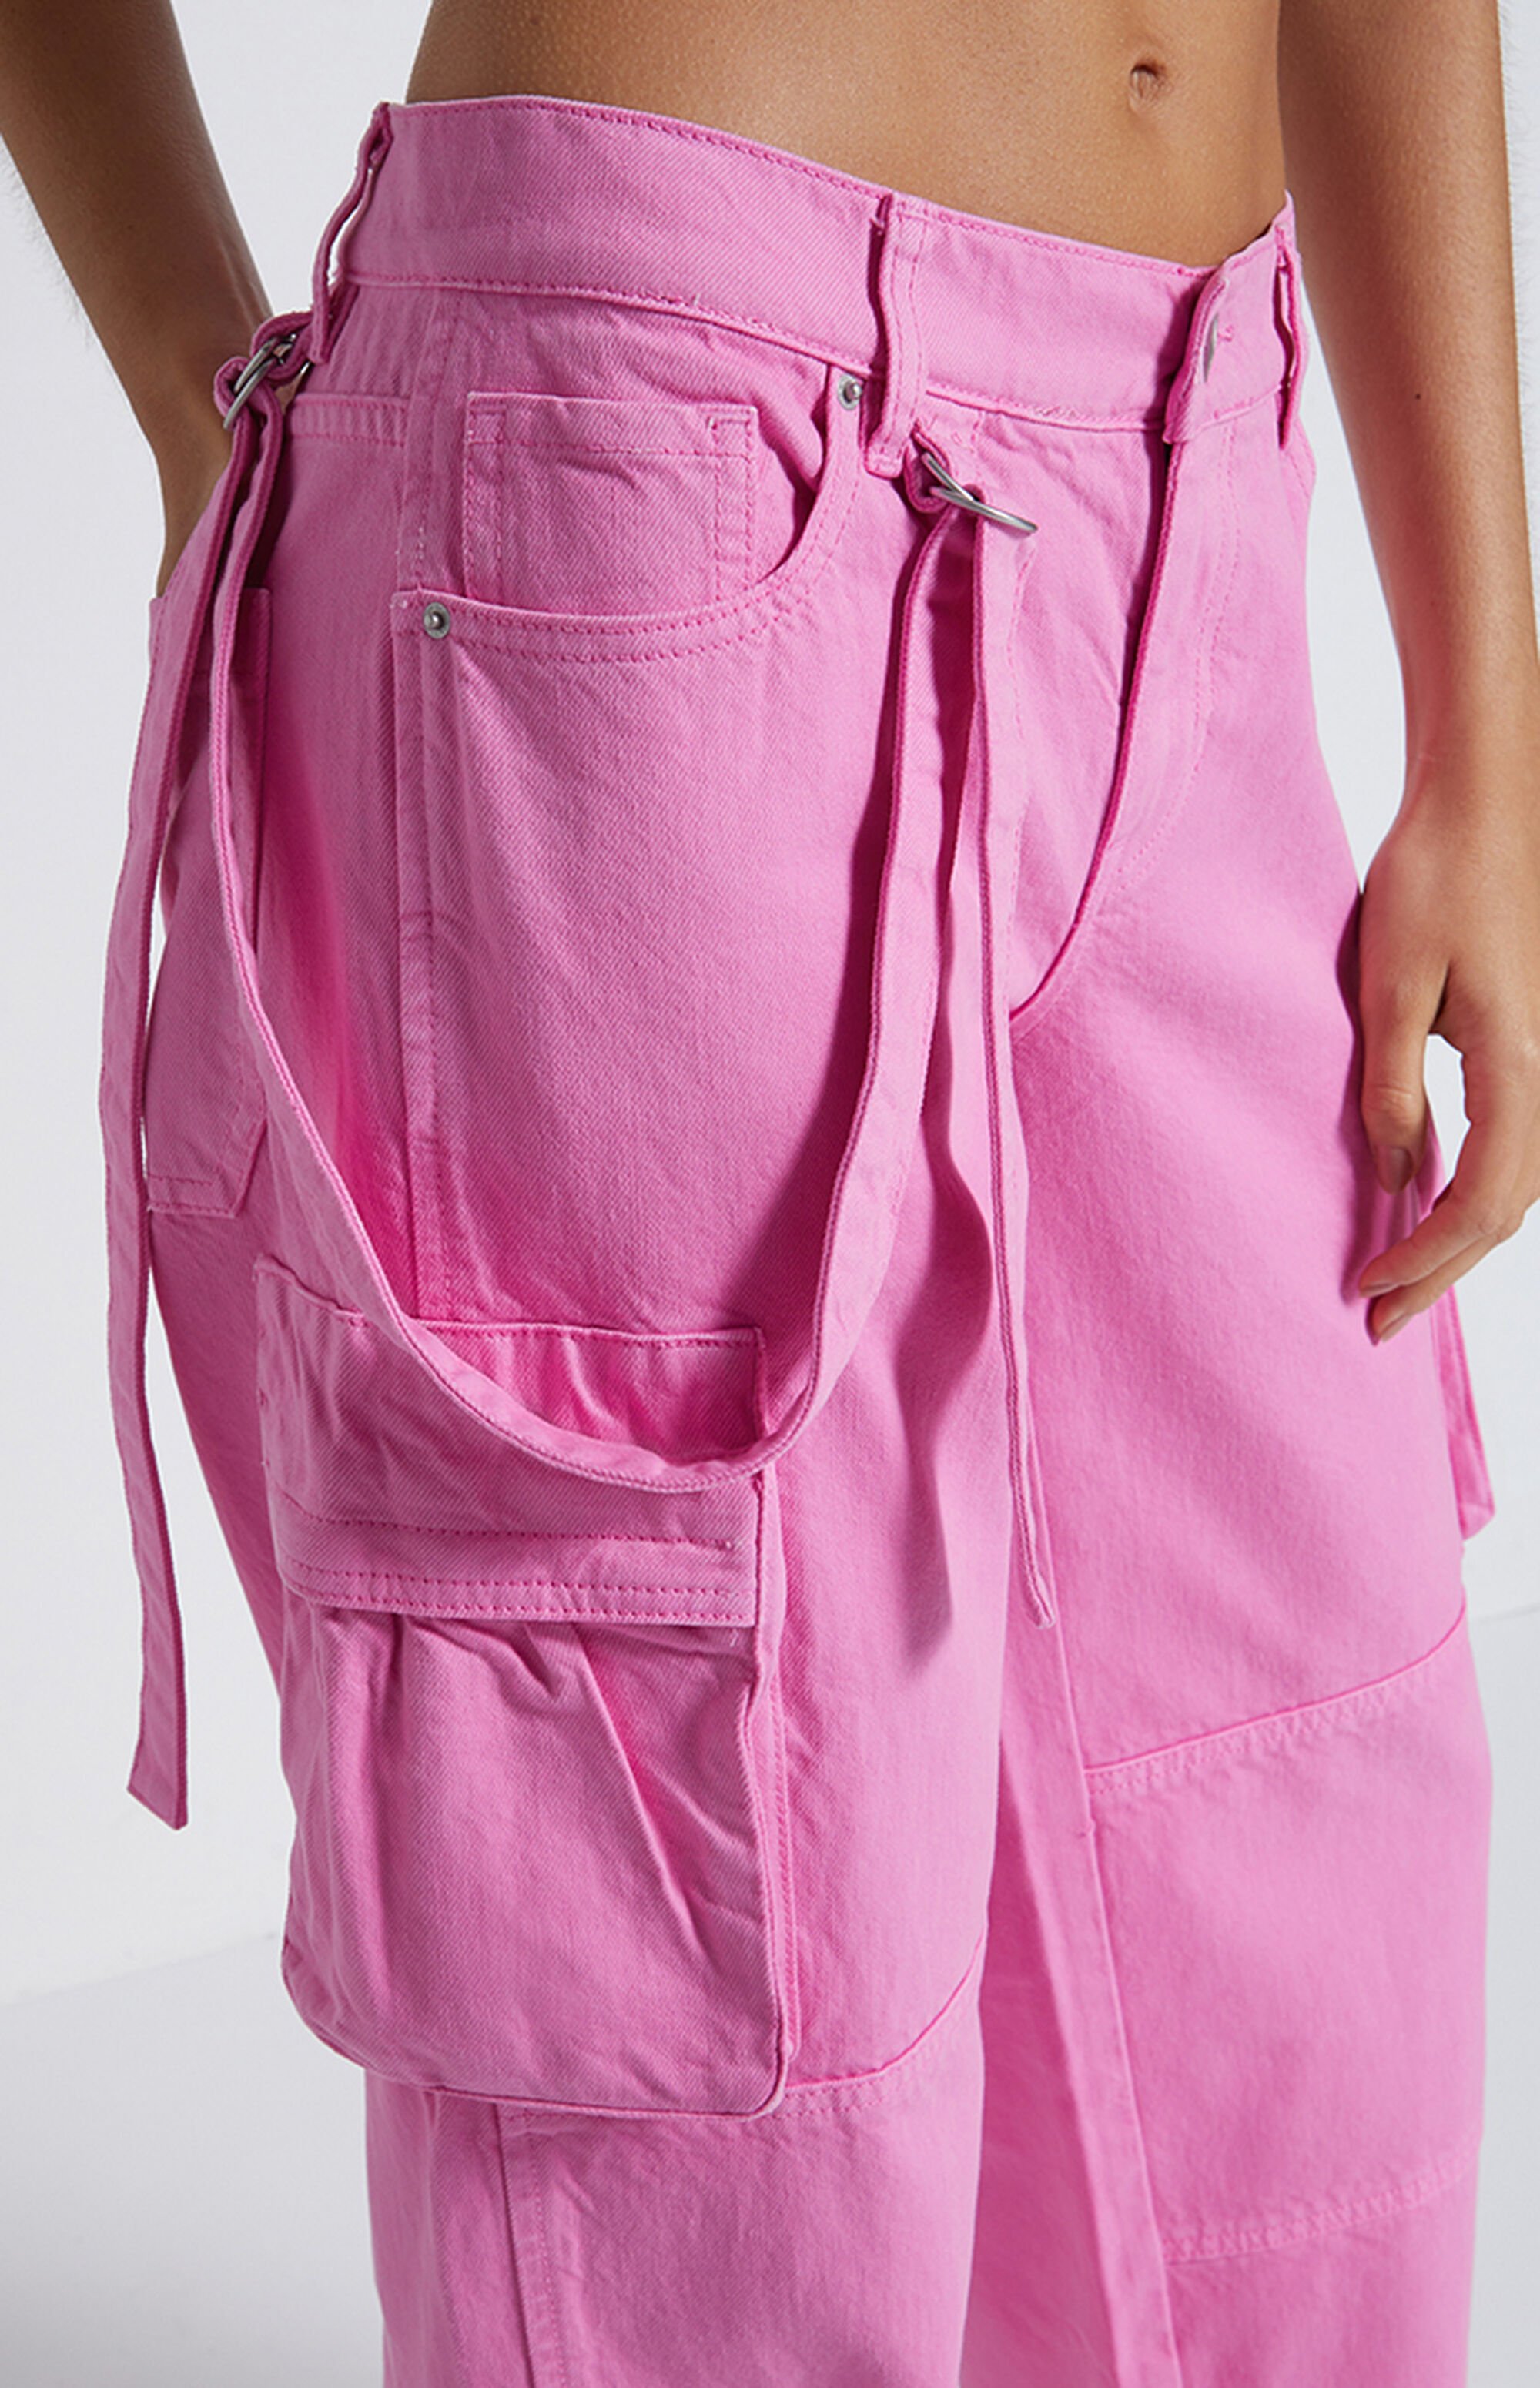 PacSun Pink Baggy Cargo Pants | PacSun